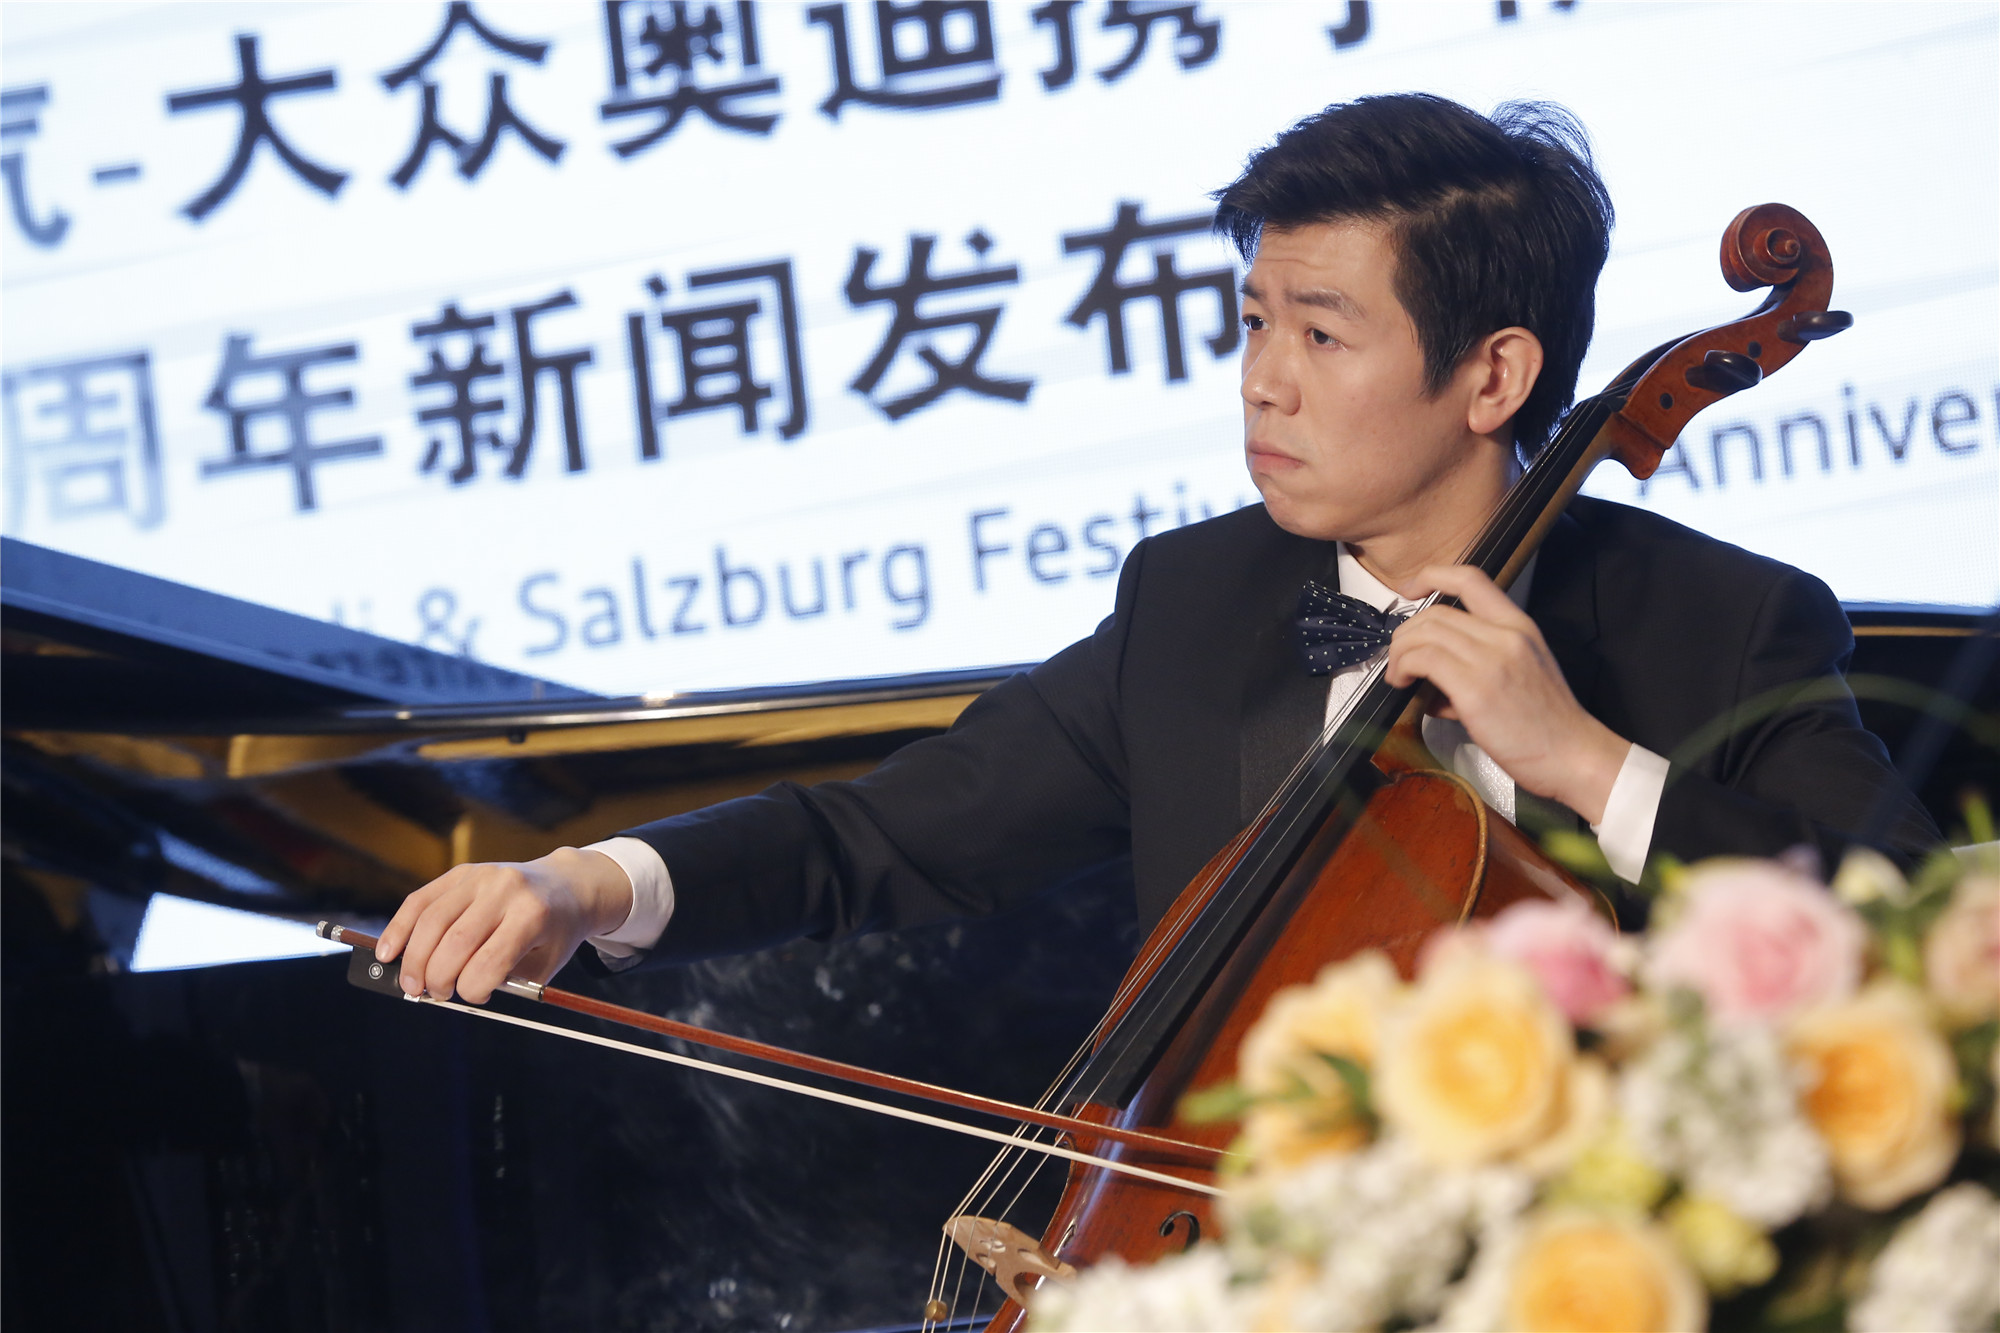 一汽-大众奥迪携手萨尔斯堡音乐节在京举办2015发布会_汽车_环球网